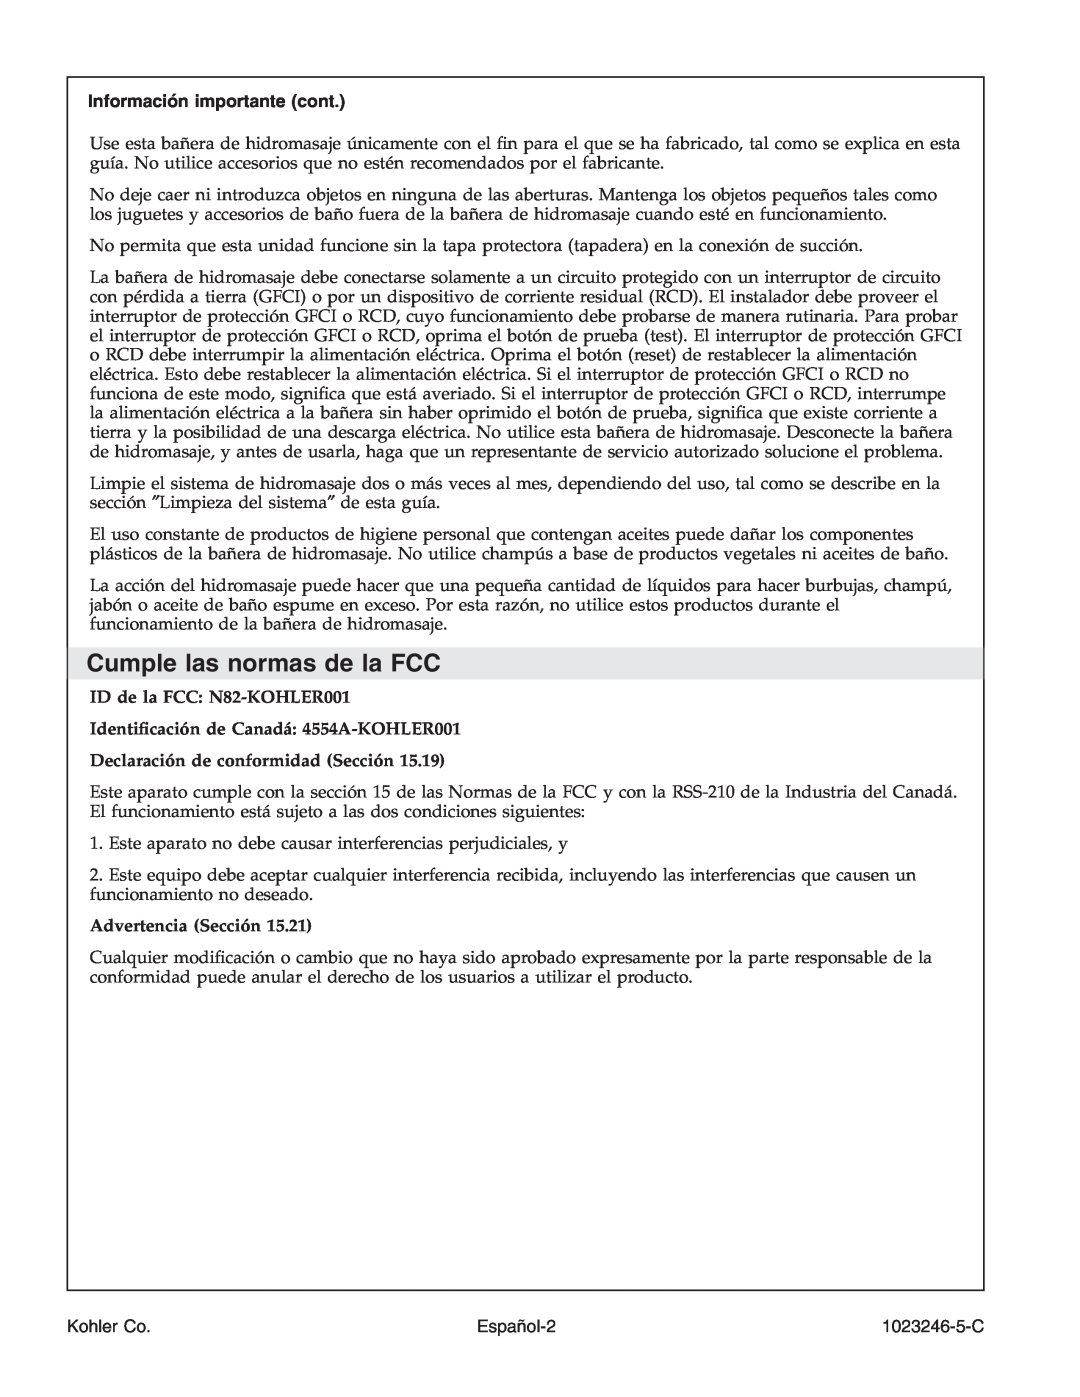 Kohler K-1418-CT manual Cumple las normas de la FCC, Información importante cont, Declaración de conformidad Sección 